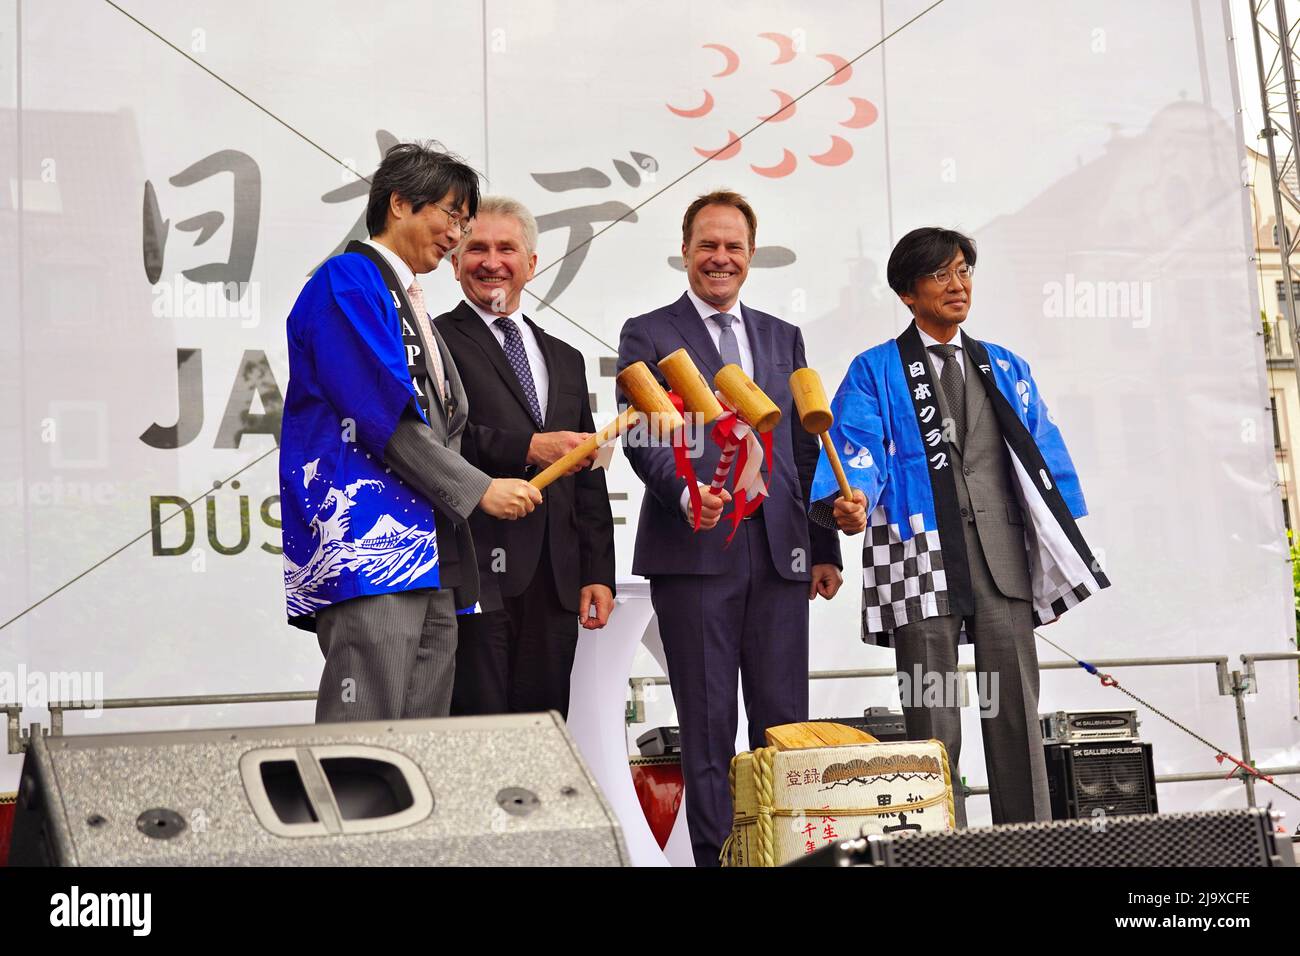 Kiminori Iwama, Prof. Dr. Andreas Pinkwart, Dr. Stephan Keller and Manabu Miyamoto at the official opening ceremony of Japantag 2022. Stock Photo